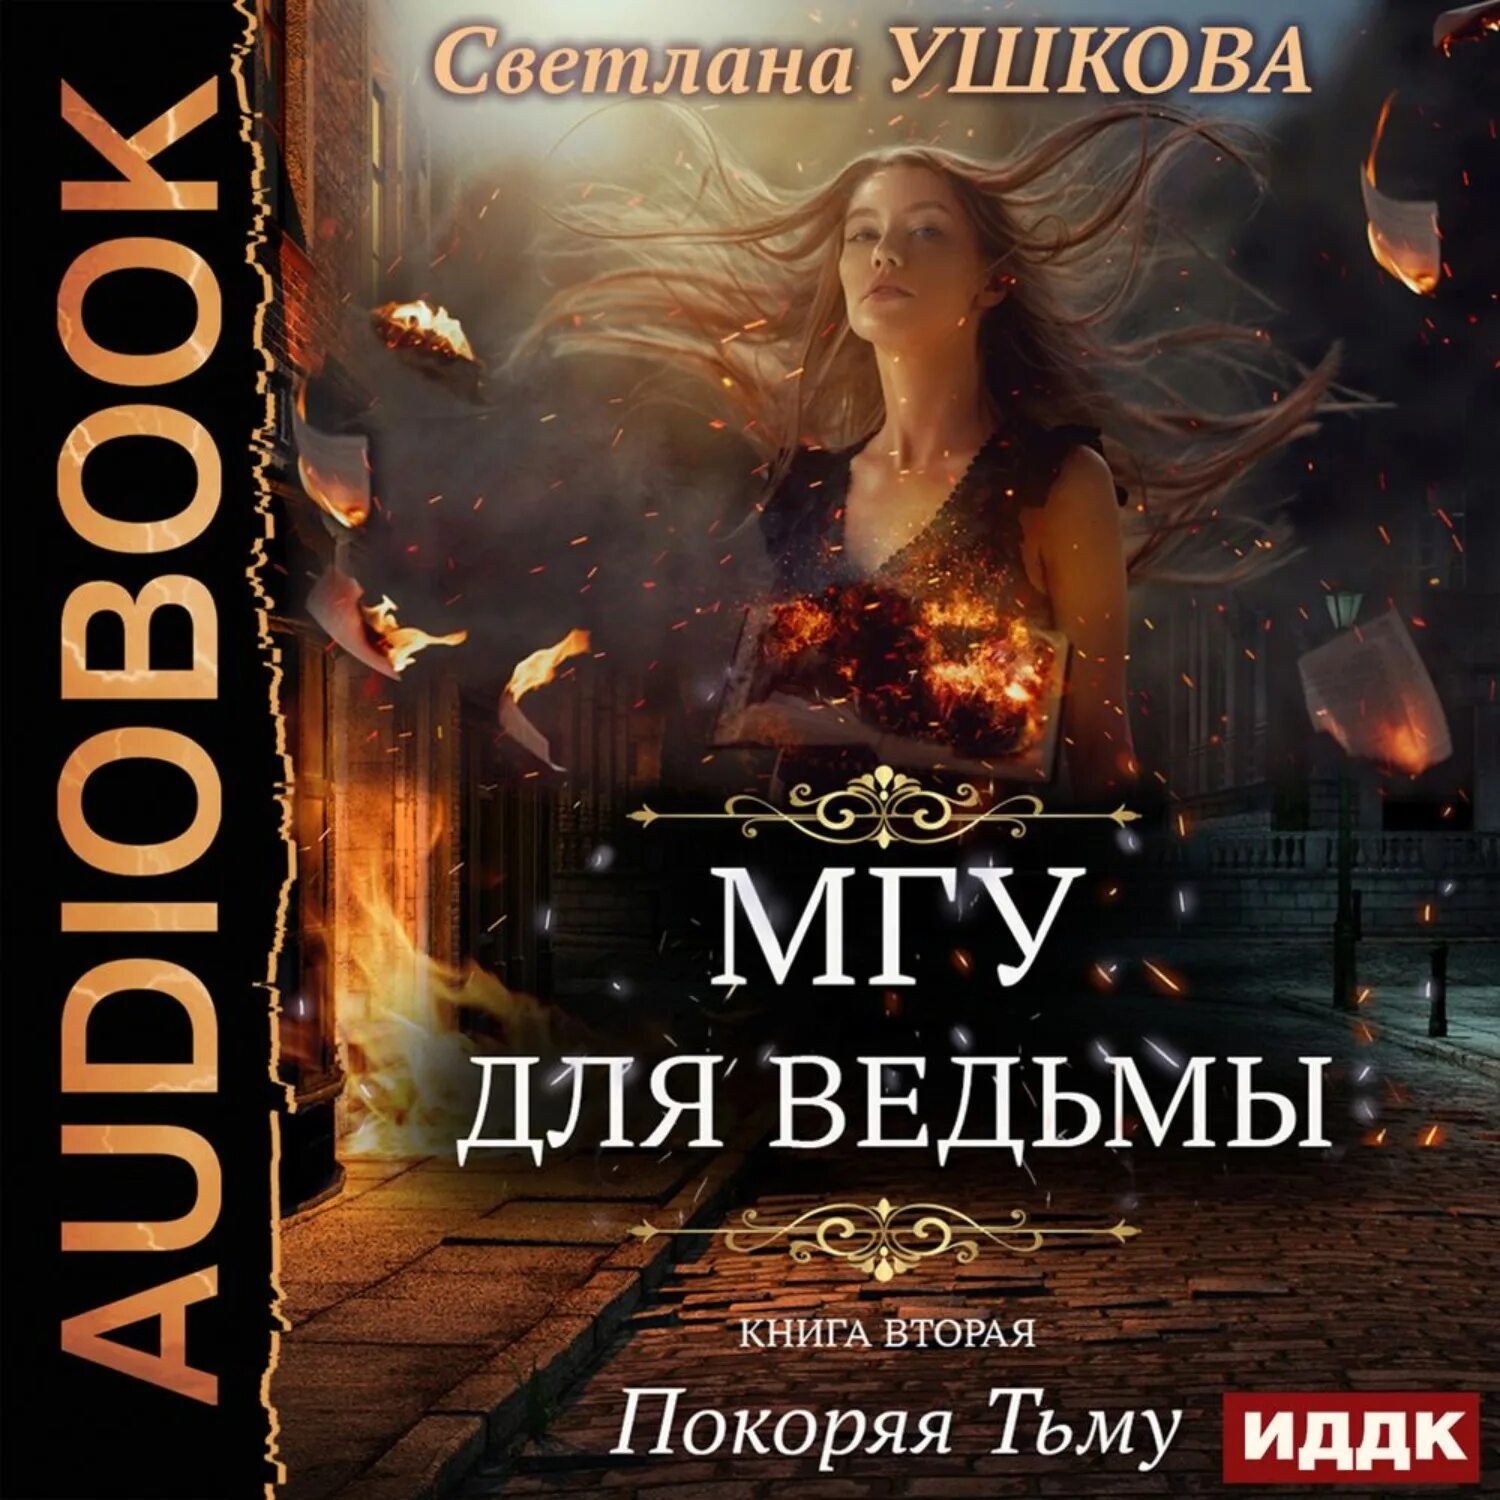 Книга МГУ для ведьмы. Книги любовное бытовое фэнтези